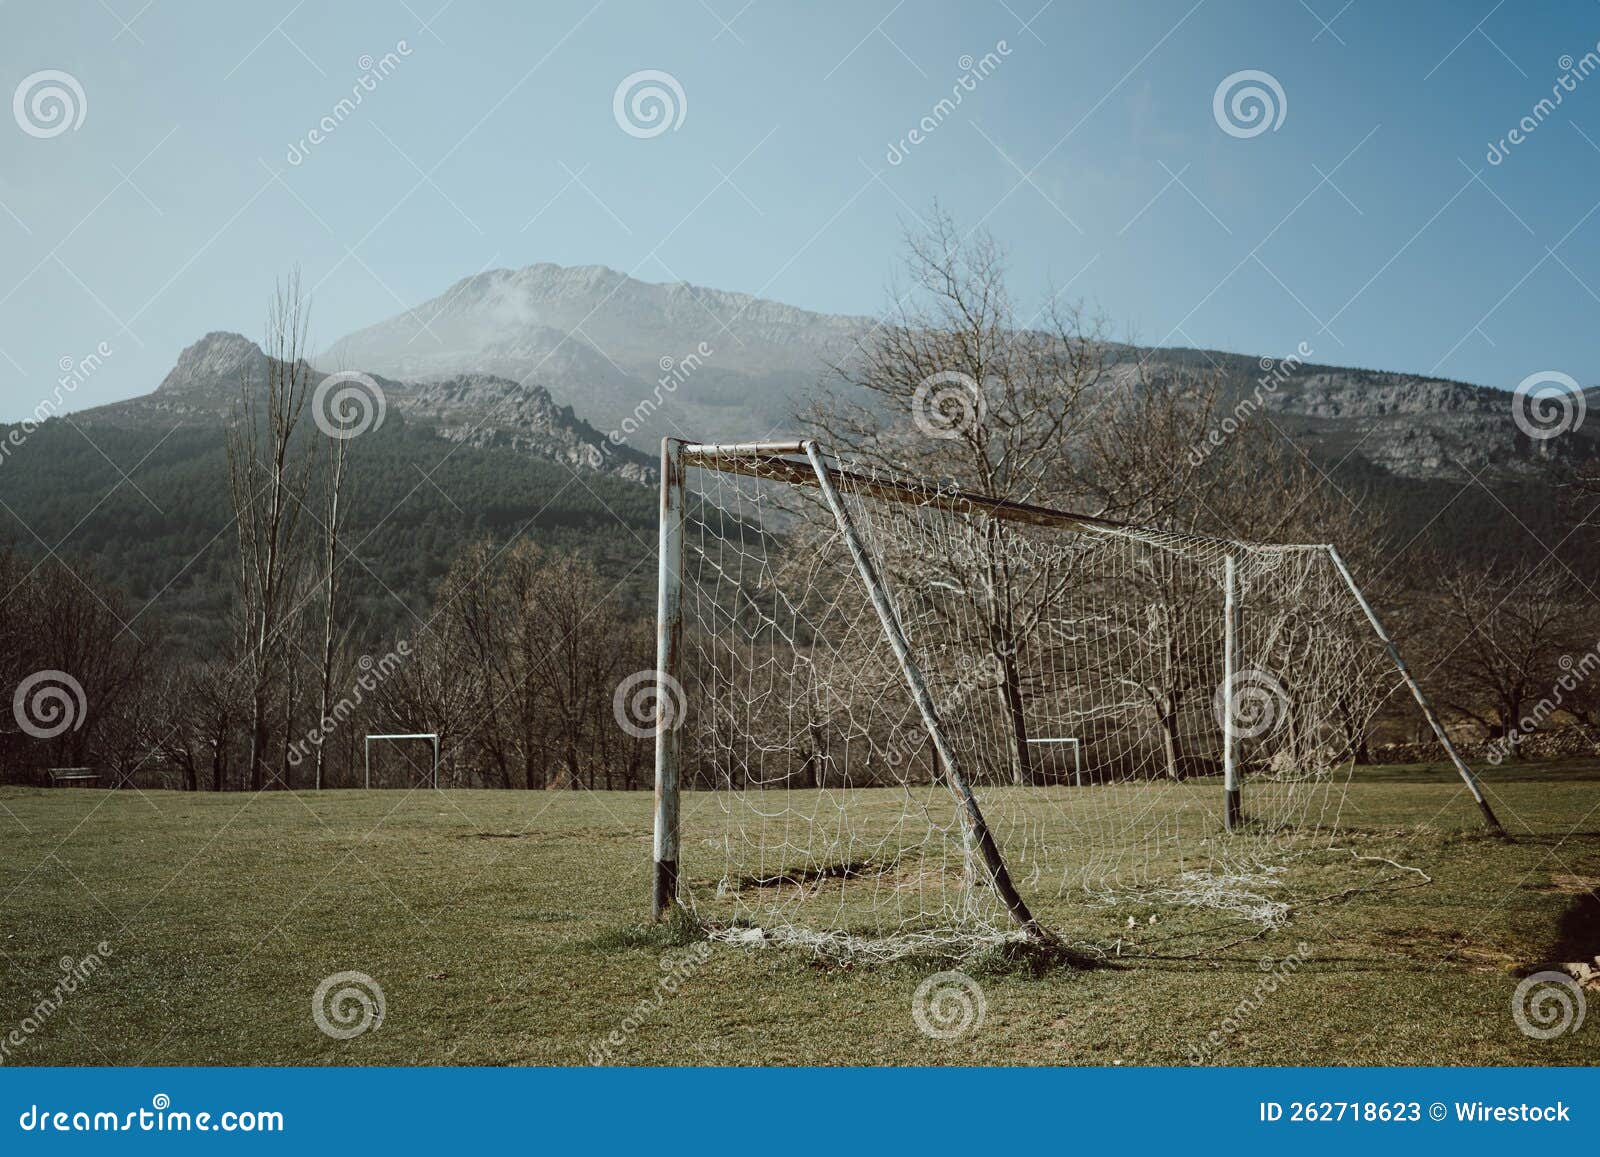 rusty soccer goal post in an abandoned old field near majaelrayo, spain